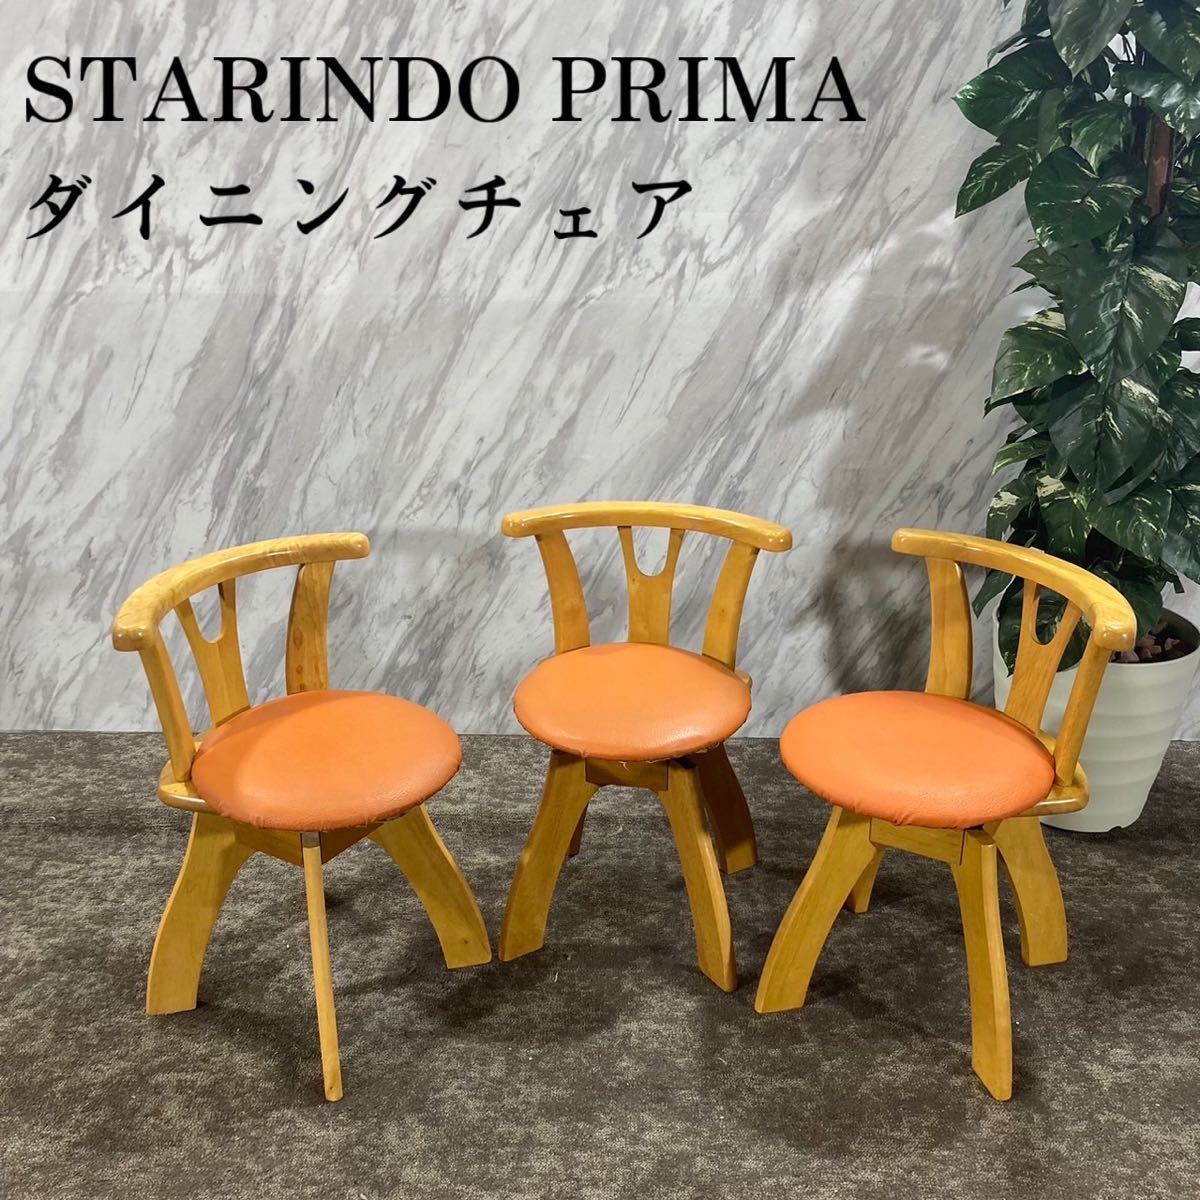 最低価格の STARINDO PRIMA ダイニングチェア 3脚セット 椅子 K034